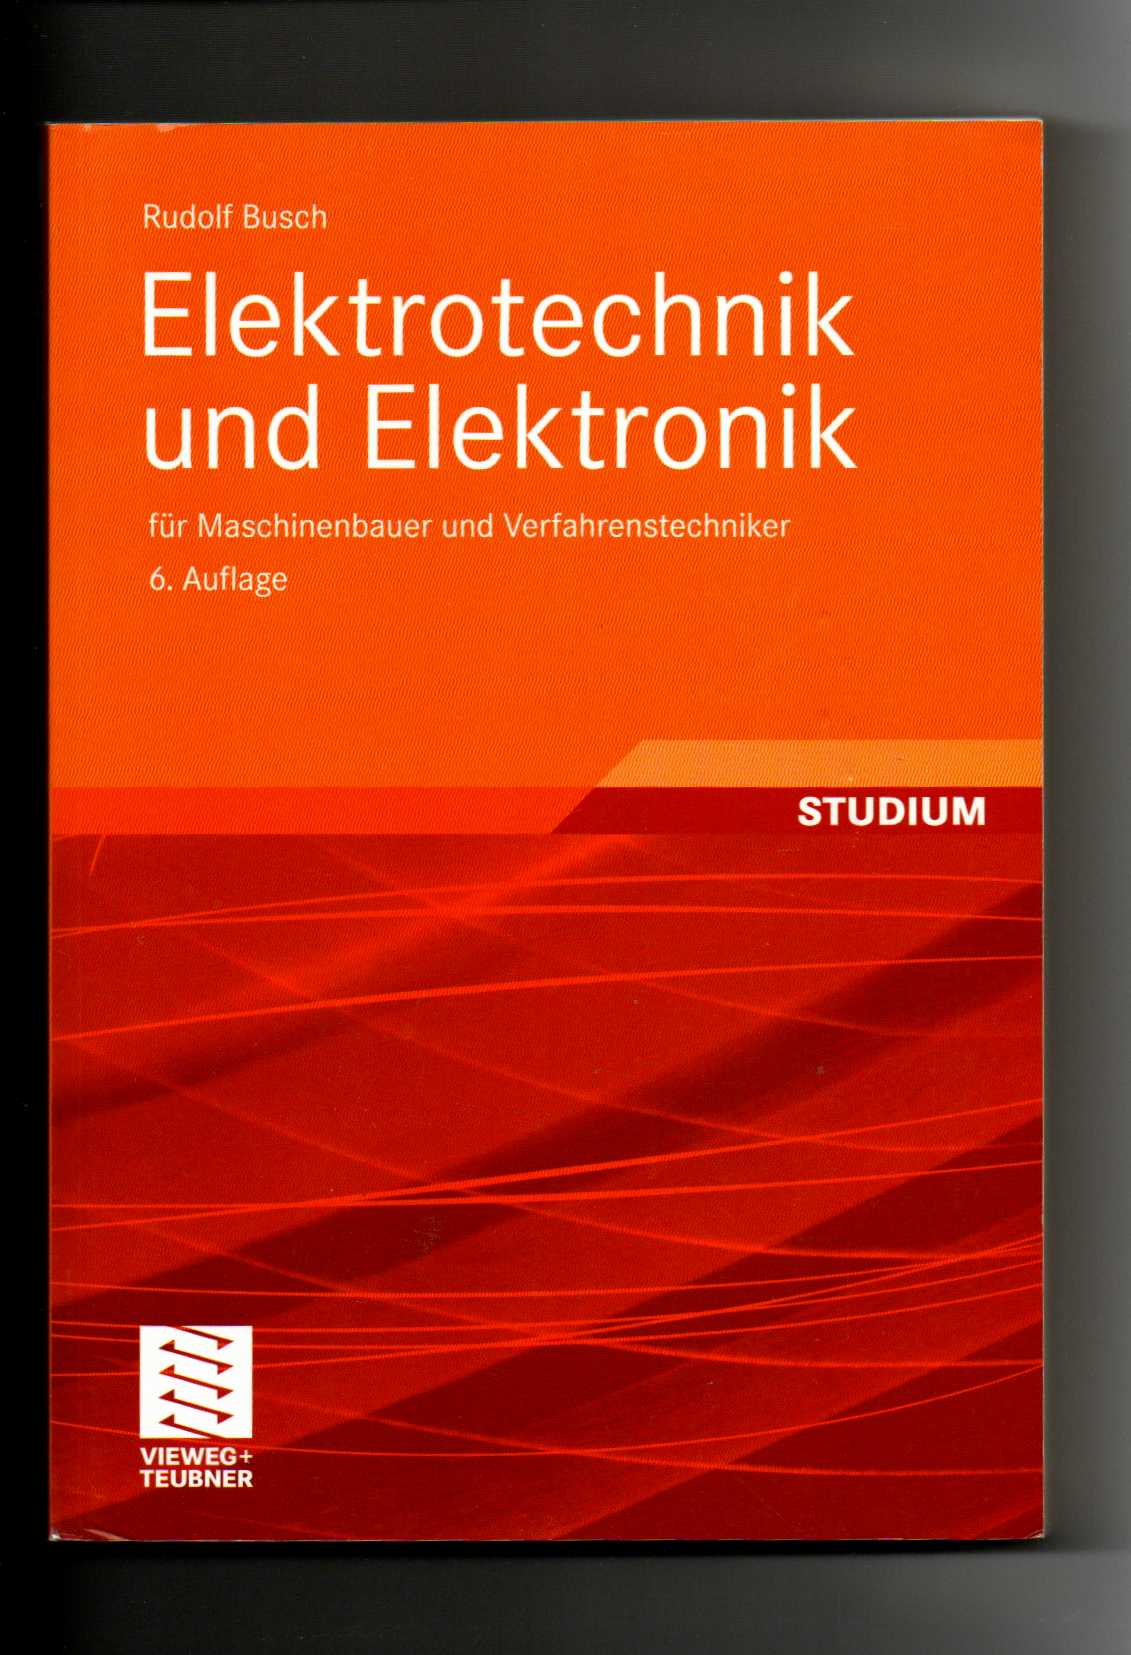 Rudolf Busch, Elektrotechnik und Elektronik für Maschinenbauer und Verfahrenstechniker  6. Auflage - Busch, Rudolf (Verfasser)